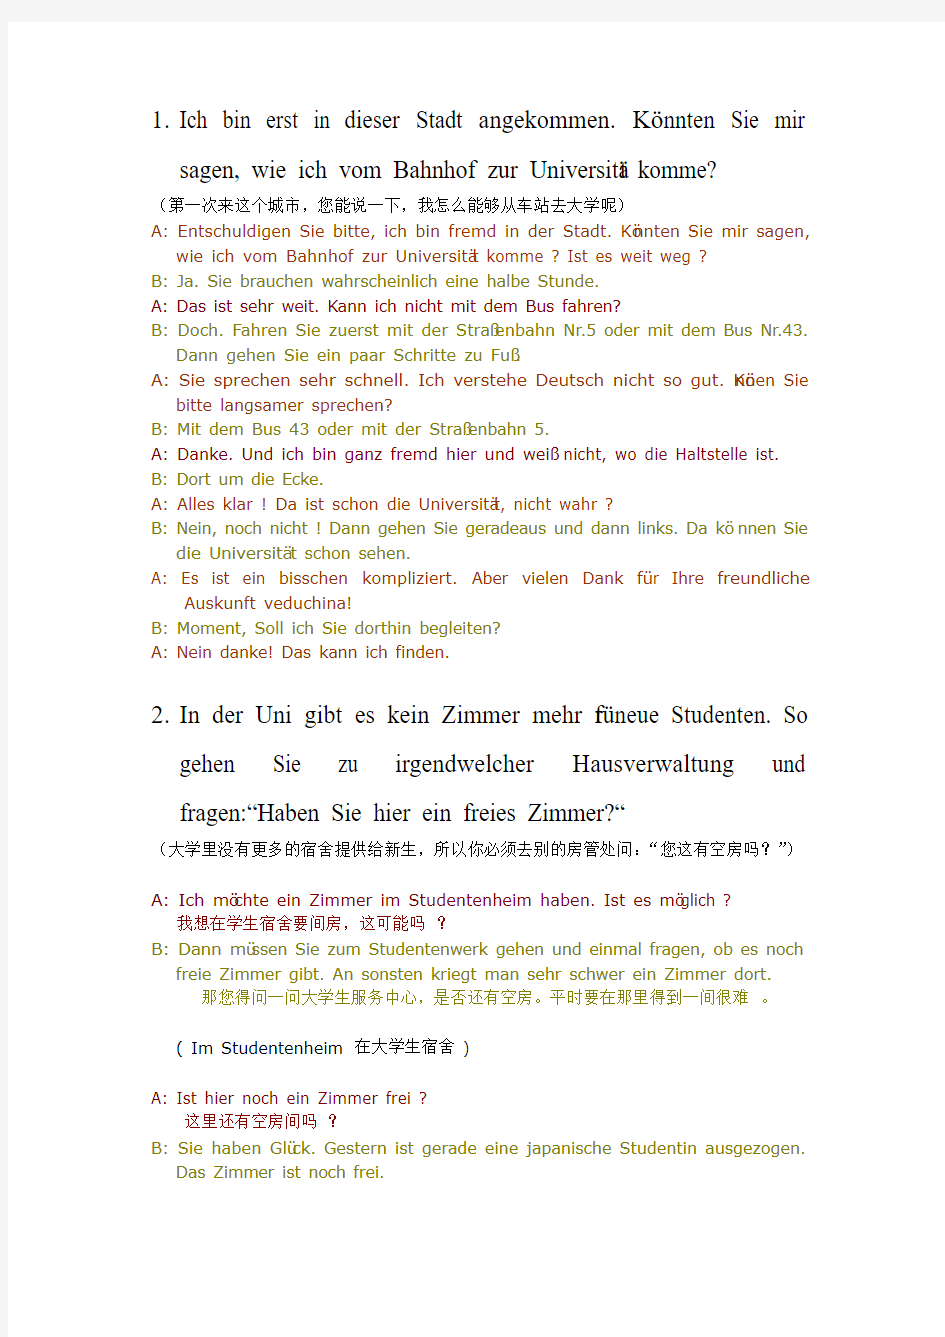 大学初级德语口试试题(附答案)